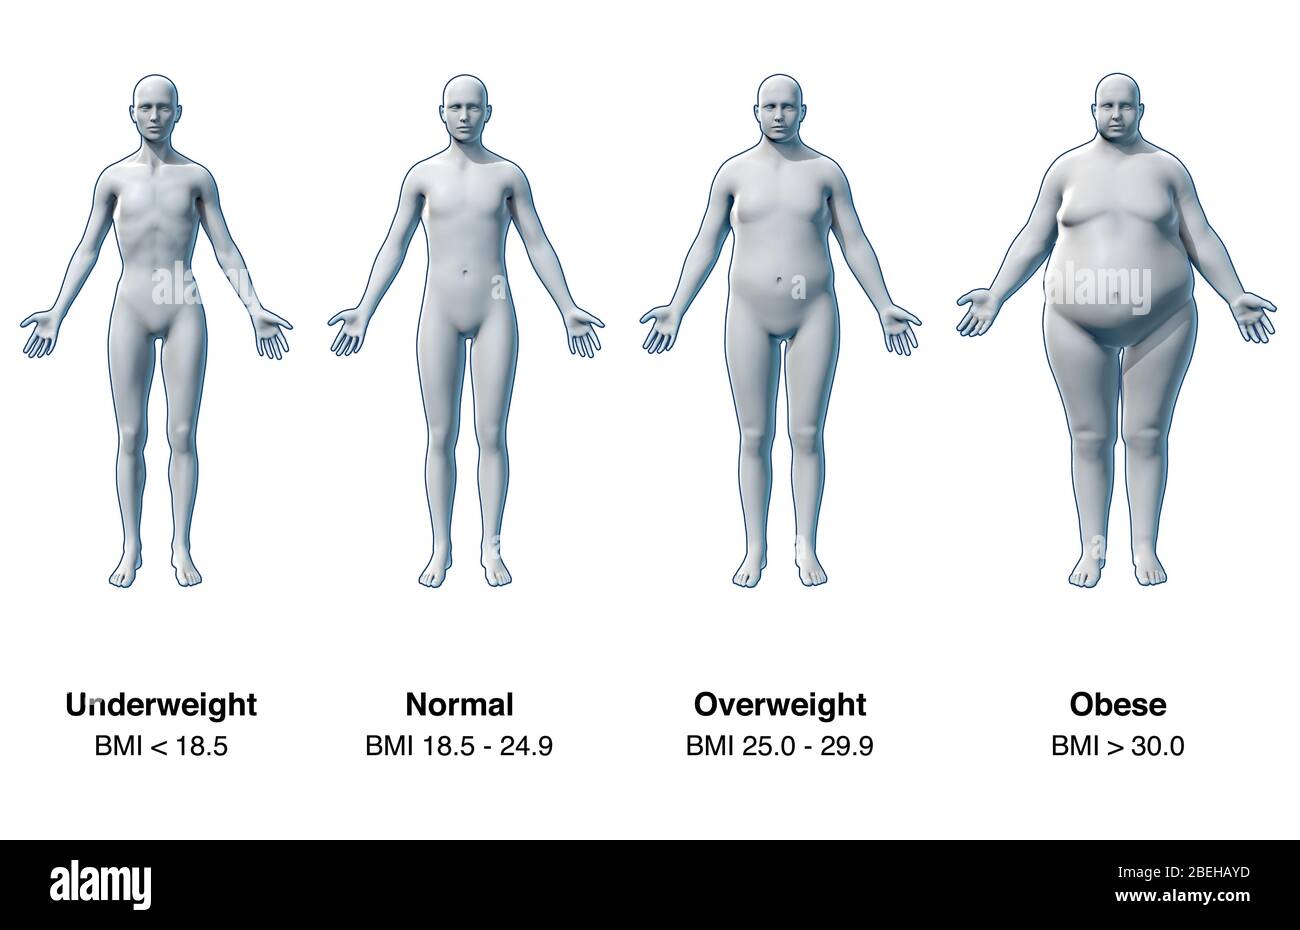 Der Body Mass Index (BMI) ist ein Maß, das verwendet wird, um die Gewebemasse auf der Grundlage des Gewichts und der Größe einer Einzelperson zu quantifizieren. Der BMI wurde entwickelt, um eine Person als Untergewicht, Normalgewicht, Übergewicht oder Fettleibigkeit zu kategorisieren, um mögliche gesundheitliche Risiken wie Mangelernährung oder Essstörungen zu bestimmen. Allerdings ist eine Person BMI meine nicht genau widerspiegeln Körperfettanteil. Zum Beispiel haben professionelle Sportler ein hohes Muskel-Fett-Verhältnis, was zu einem irreführenden hohen BMI führt. Stockfoto